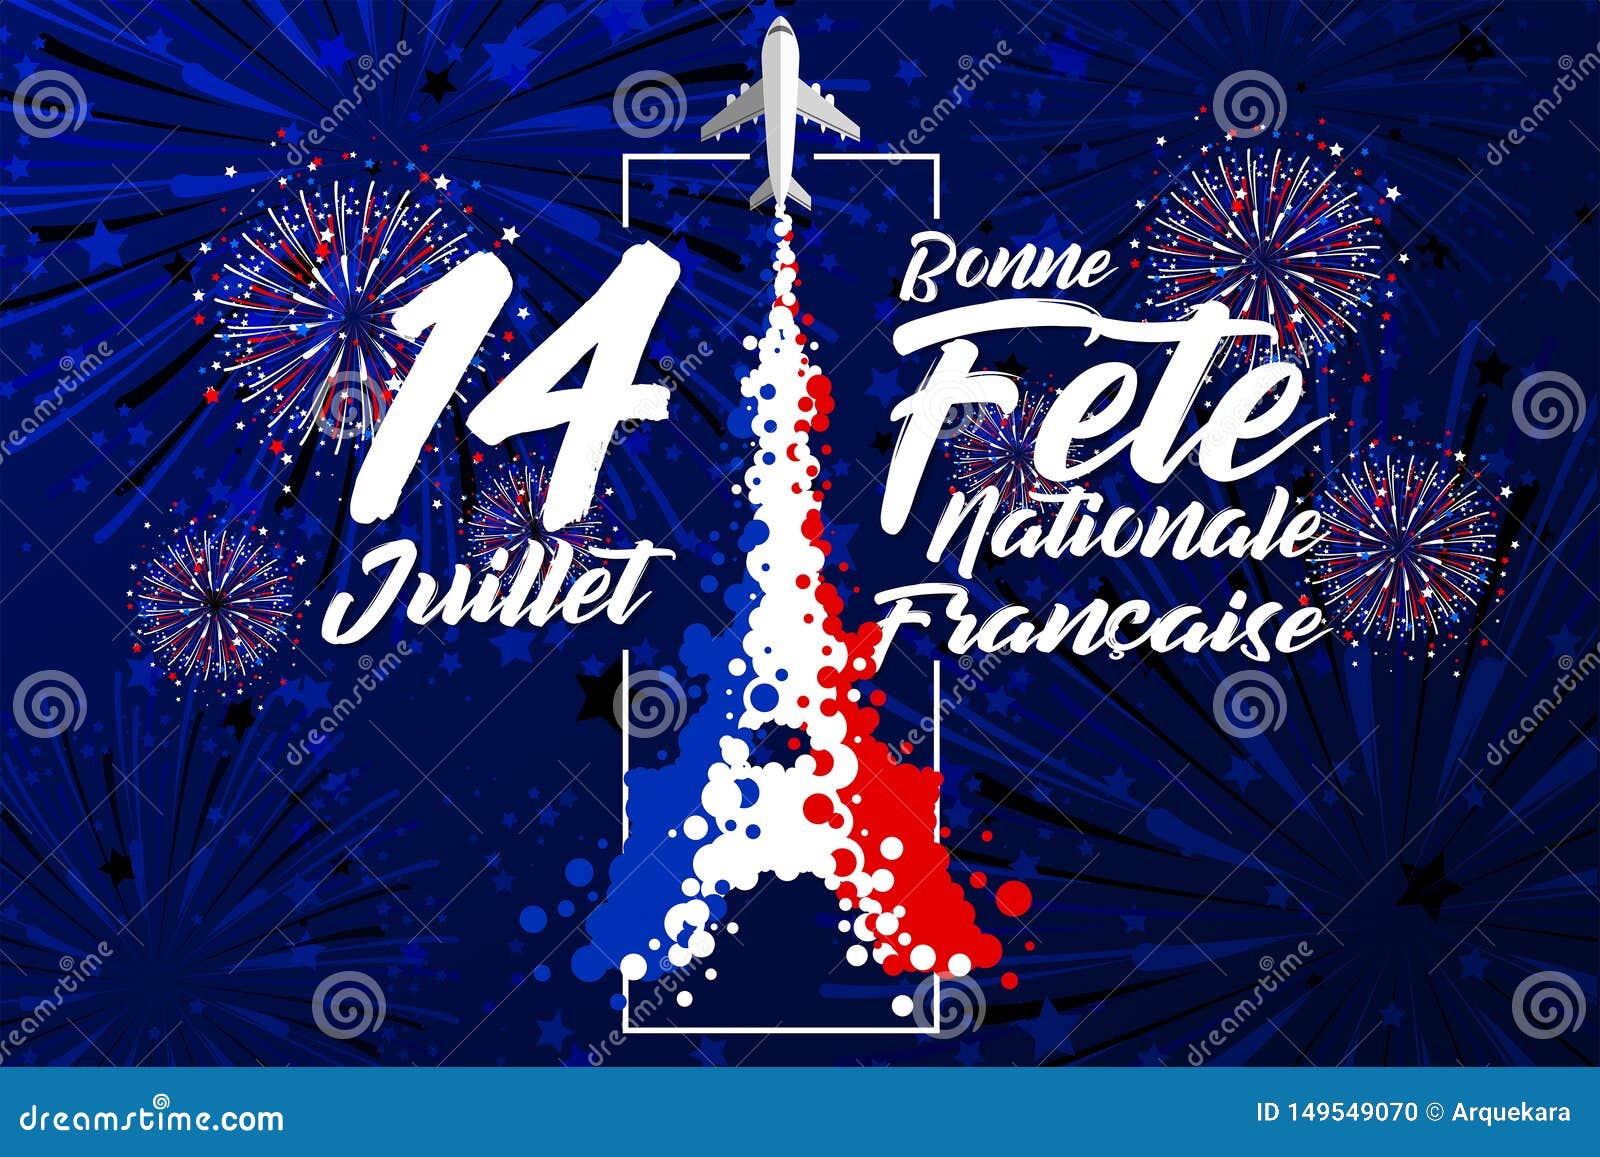 `14 juillet - bonne fÃÂªte nationale franÃÂ§ais` is the words for celebrate french bastille day in 14th july